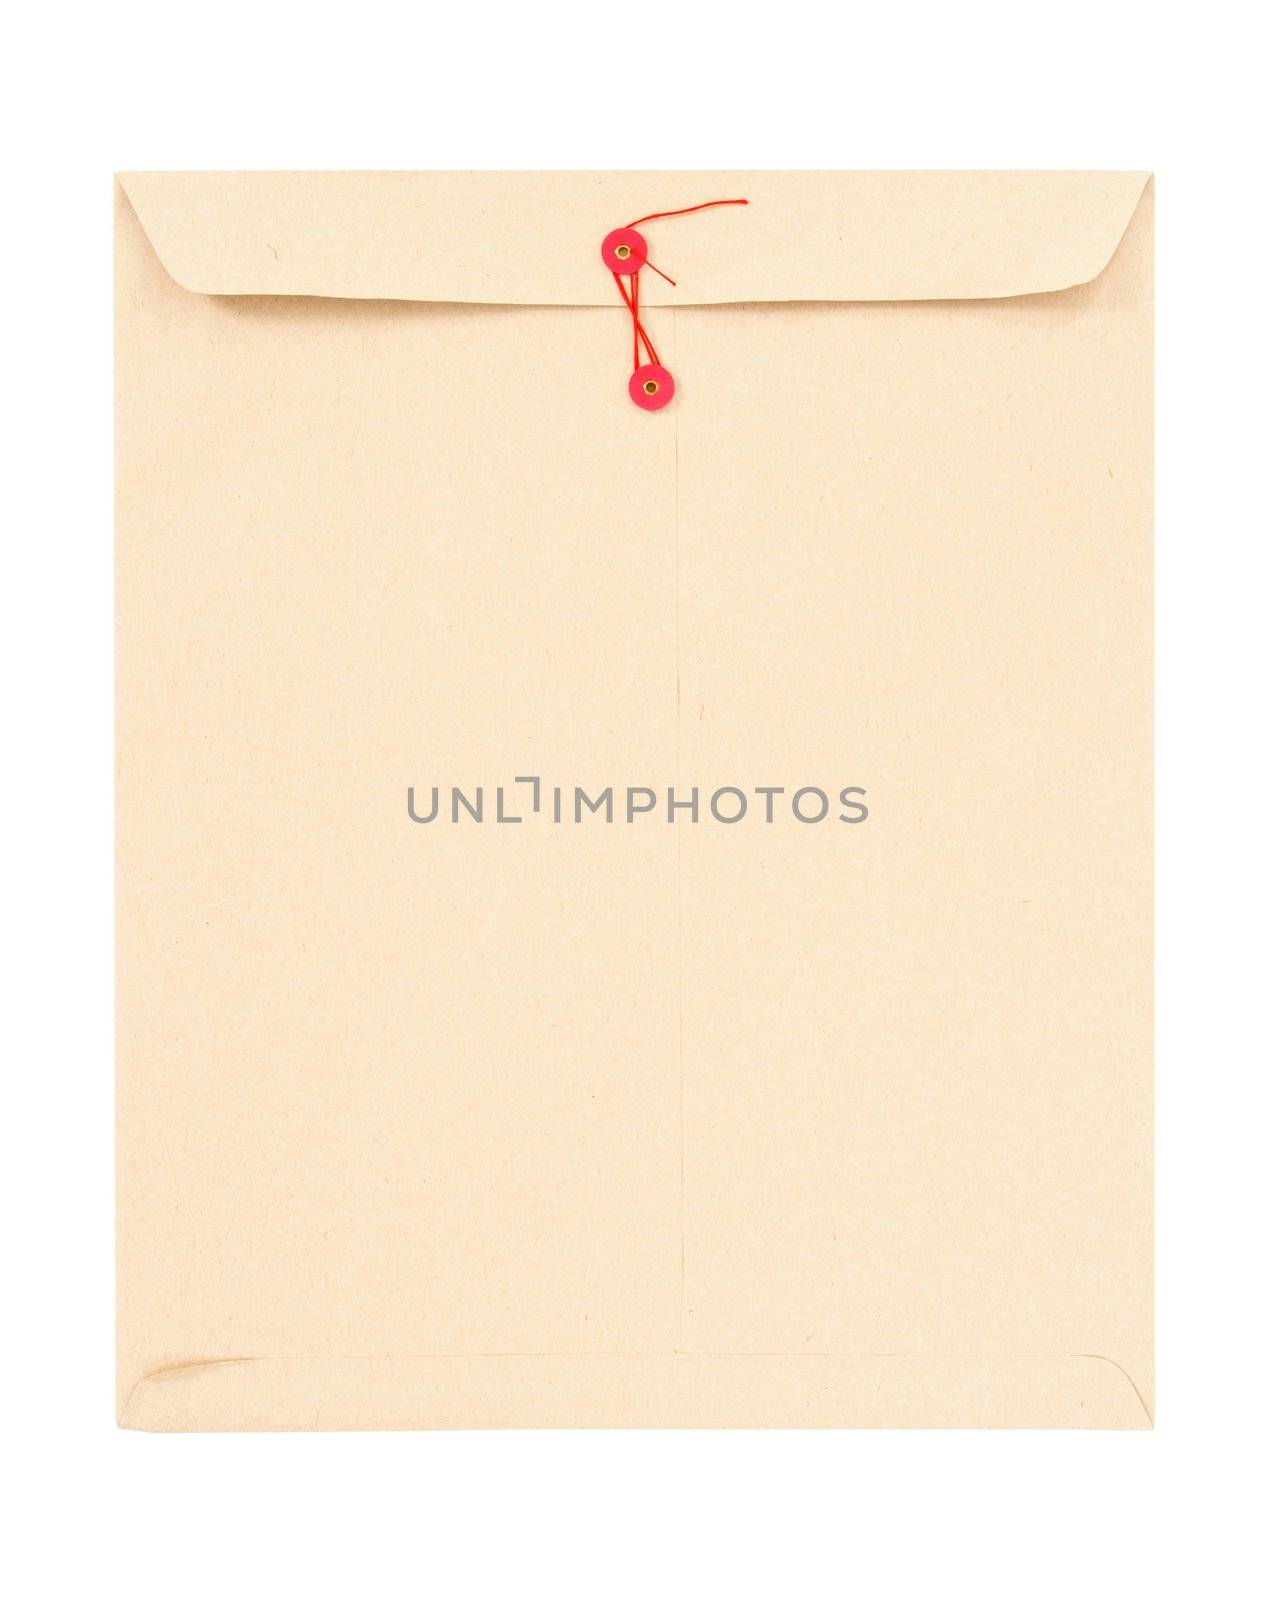 Manila envelope with red string by anikasalsera